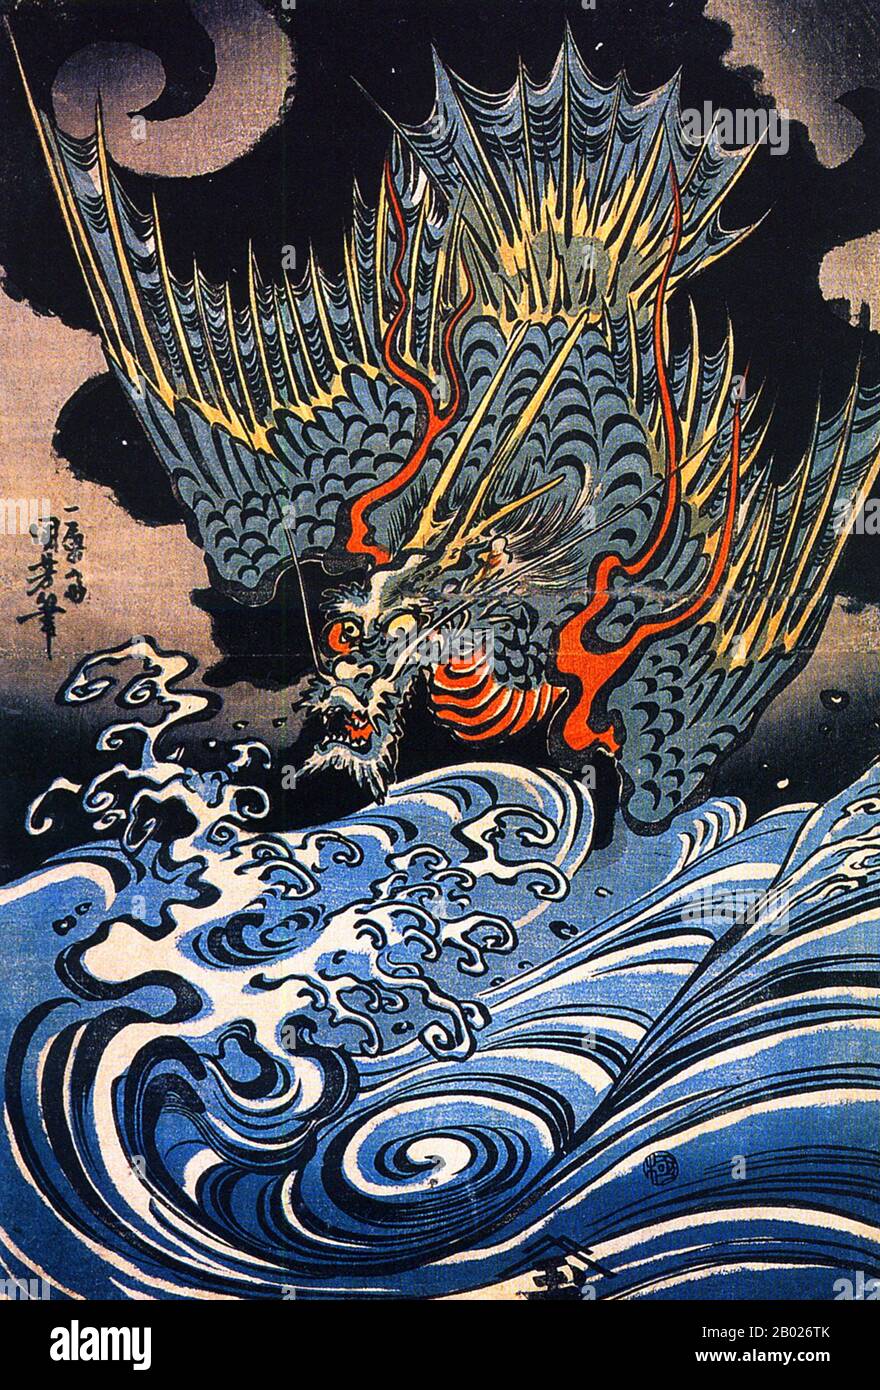 Utagawa Kuniyoshi (歌川 国芳) war einer der letzten großen Meister des japanischen Ukiyo-e-Stils der Holzschnitte und Malerei. Er ist mit der Utagawa-Schule verbunden. Die Bandbreite der bevorzugten Themen von Kuniyoshi umfasste viele Genres: Landschaften, schöne Frauen, Kabuki-Schauspieler, Katzen und Fabeltiere. Er ist bekannt für Darstellungen der Schlachten von Samurai und legendären Helden. Sein Kunstwerk war von westlichen Einflüssen in der Landschaftsmalerei und Karikatur betroffen. Stockfoto